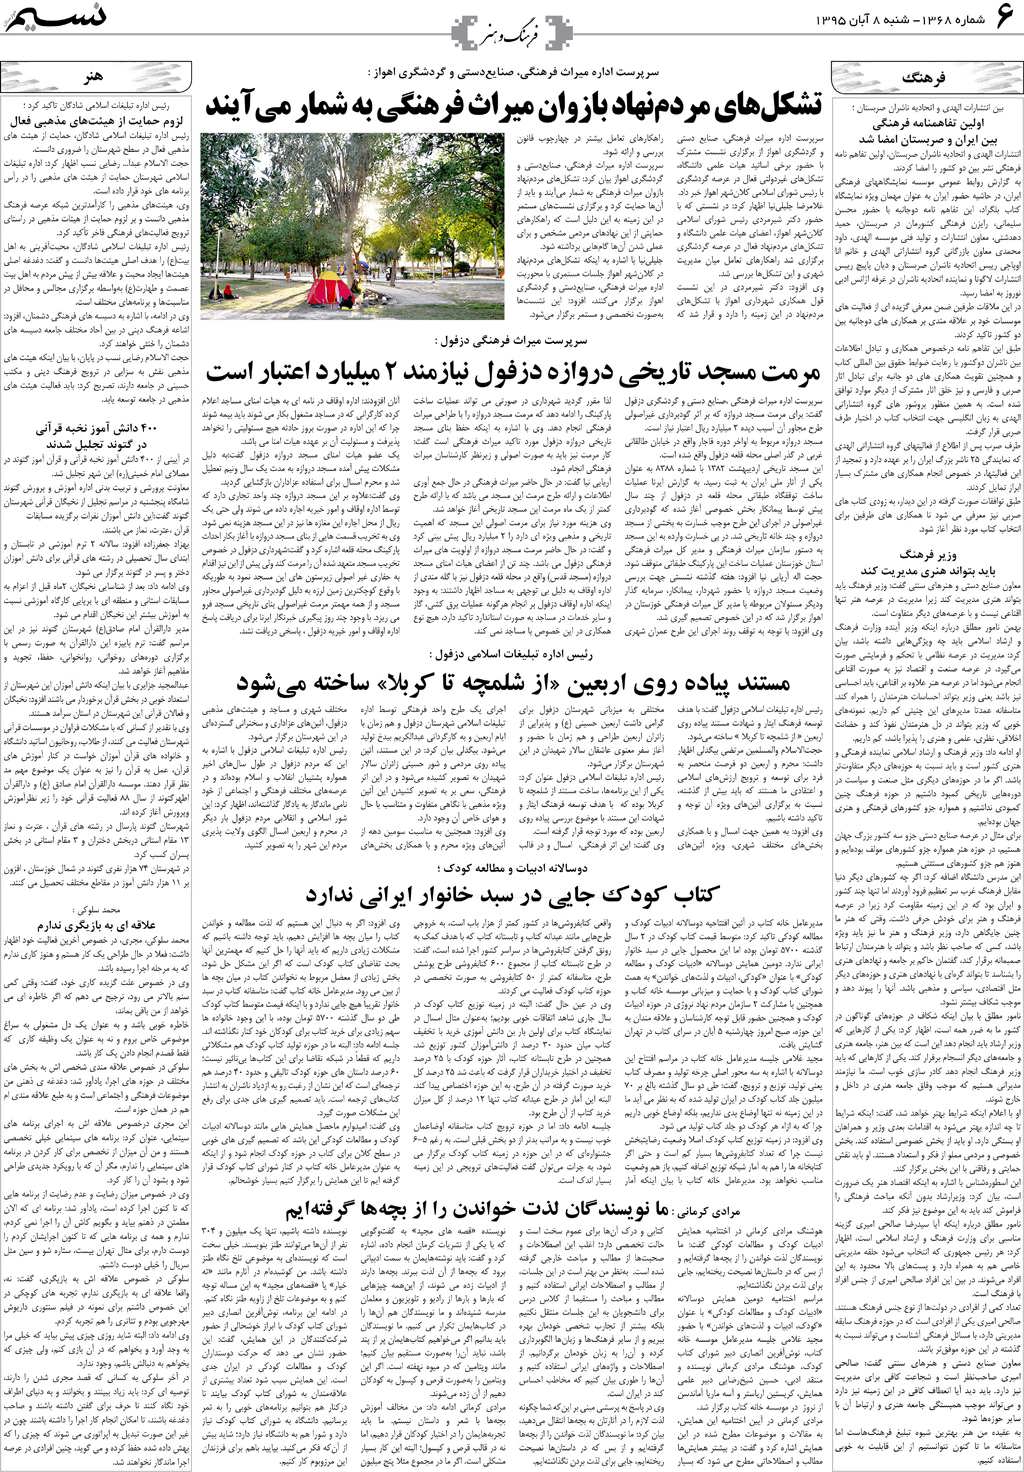 صفحه فرهنگ و هنر روزنامه نسیم شماره 1368